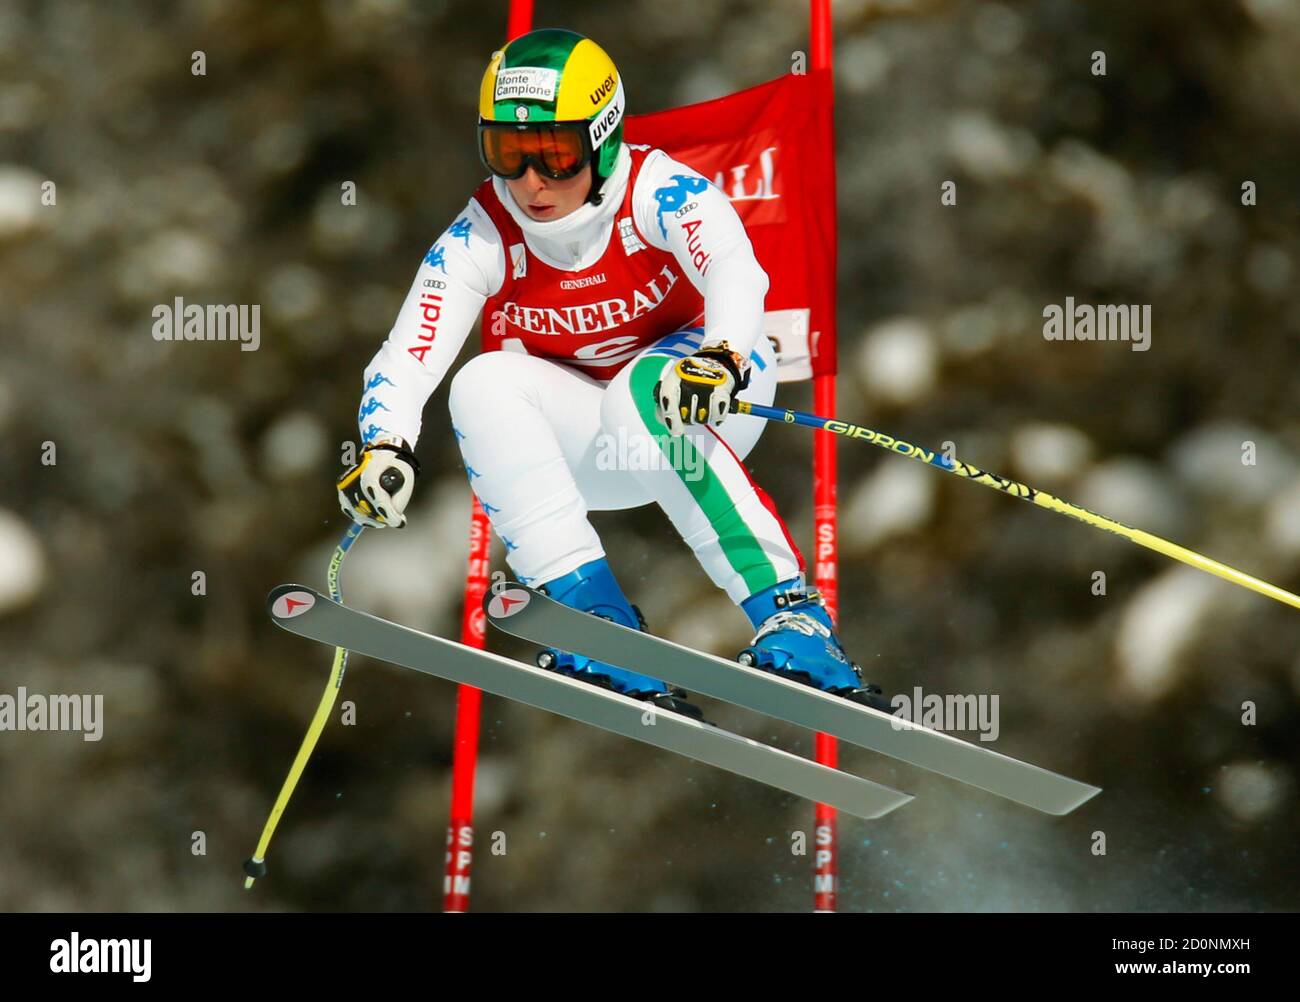 Elena Fanchini, de l'Italie, prend l'air pendant l'entraînement de ski alpin pour la coupe du monde des femmes à Lake Louise (Alberta) le 27 novembre 2012. REUTERS/Mike Blake (CANADA - Tags: SKI DE SPORT) Banque D'Images